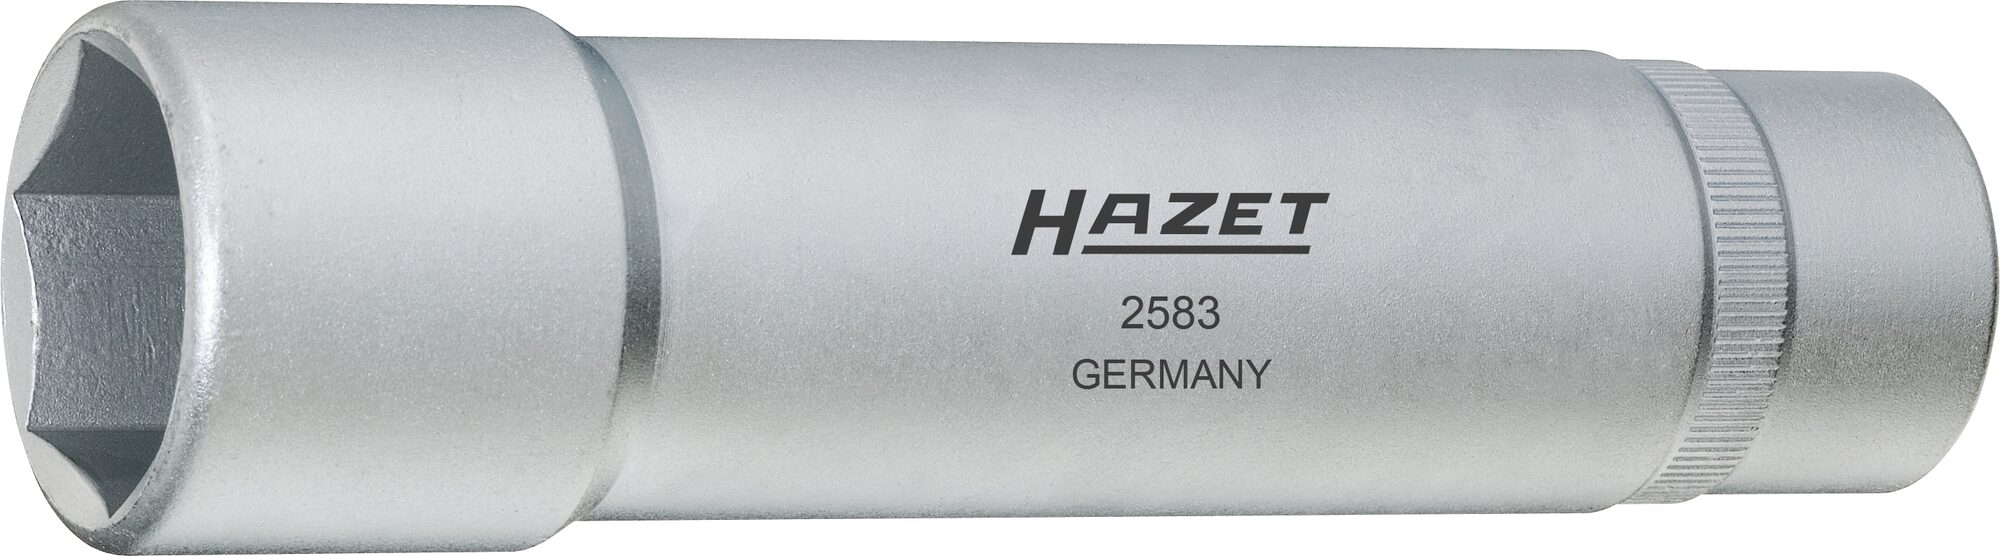 HAZET Radlager-Werkzeug 2583 · Vierkant hohl 12,5 mm (1/2 Zoll) · Außen Sechskant Profil · 27 mm